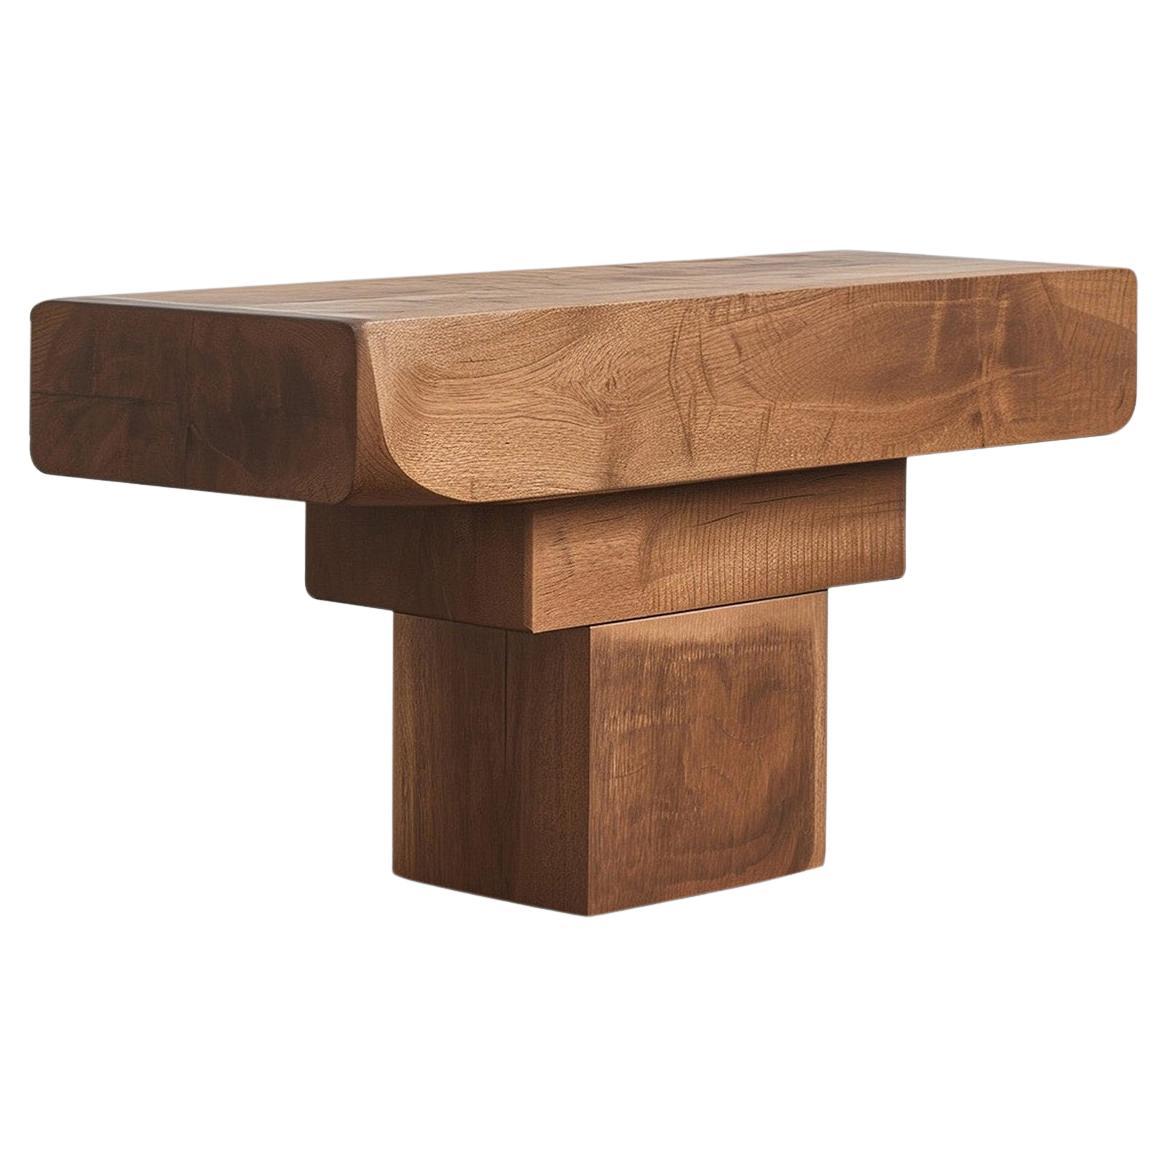 Table Elefante by NONO 02, Oak Pure, Distinctive Style